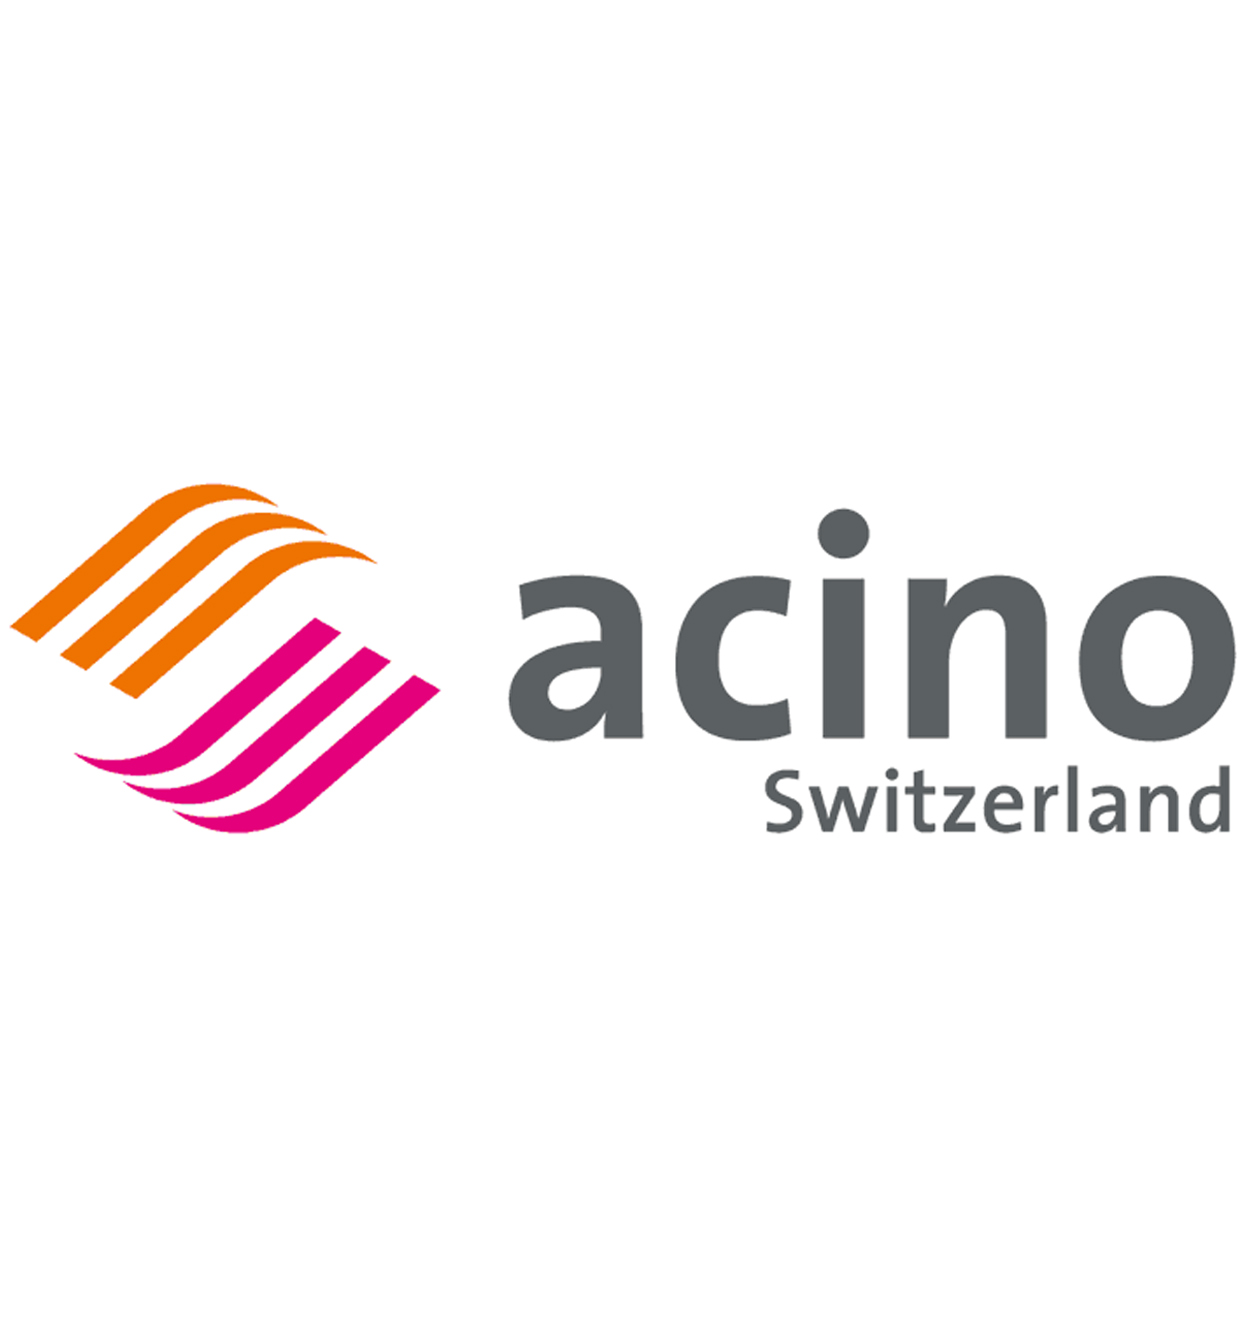 Acino Swiss